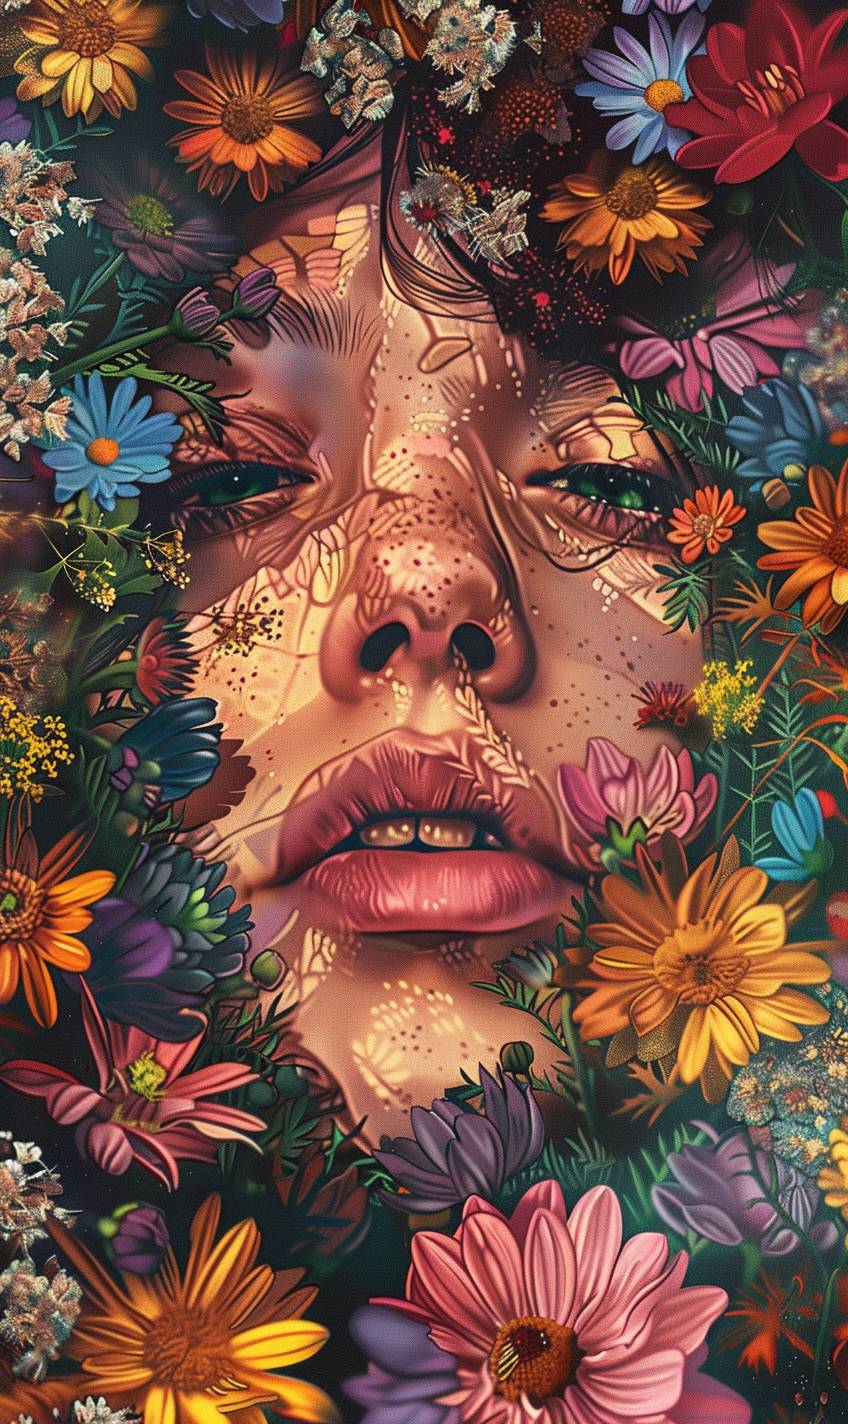 ボホスタイルのウォールアート、[被写体]の顔のクローズアップ、カラフルな花々に囲まれたヒッピーの雰囲気、デジタルイラスト